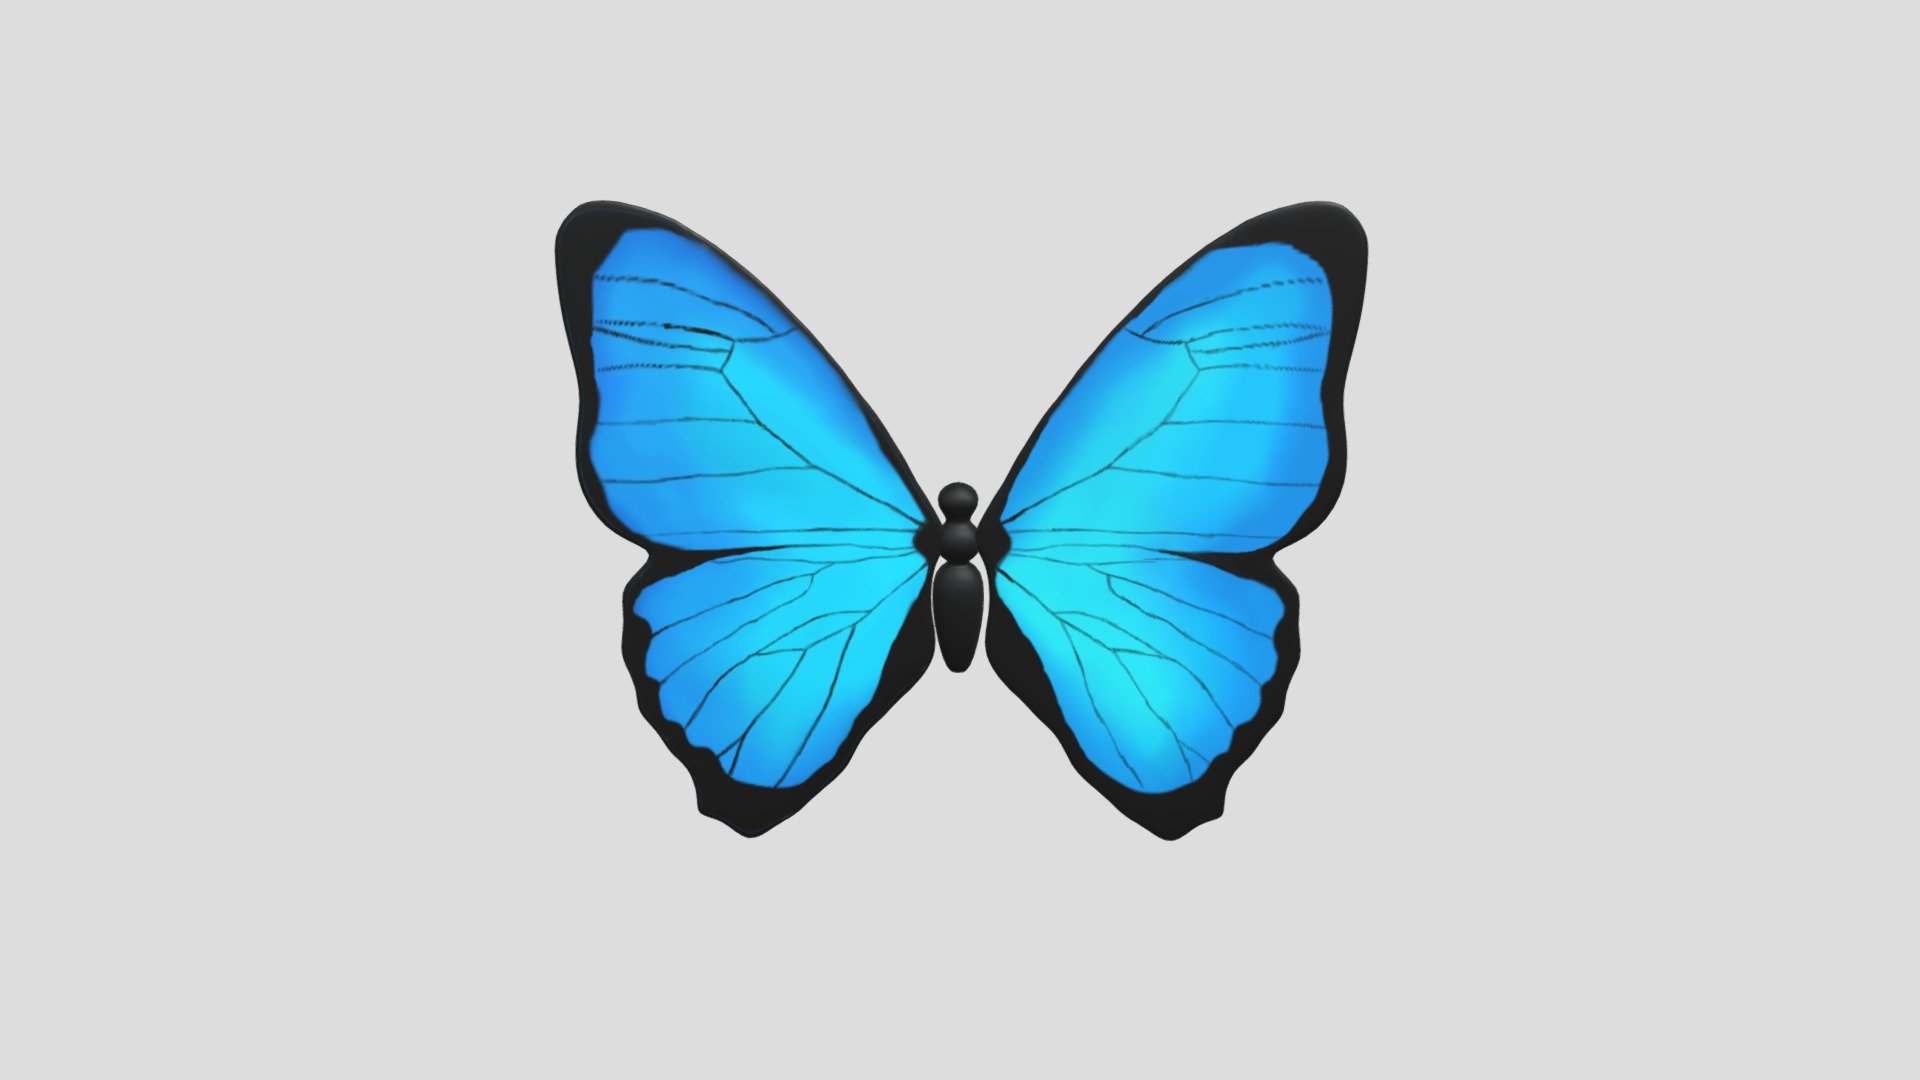 Butterfly 3d 03 Blue Butterfly 3d 03 Blue (Адилет)